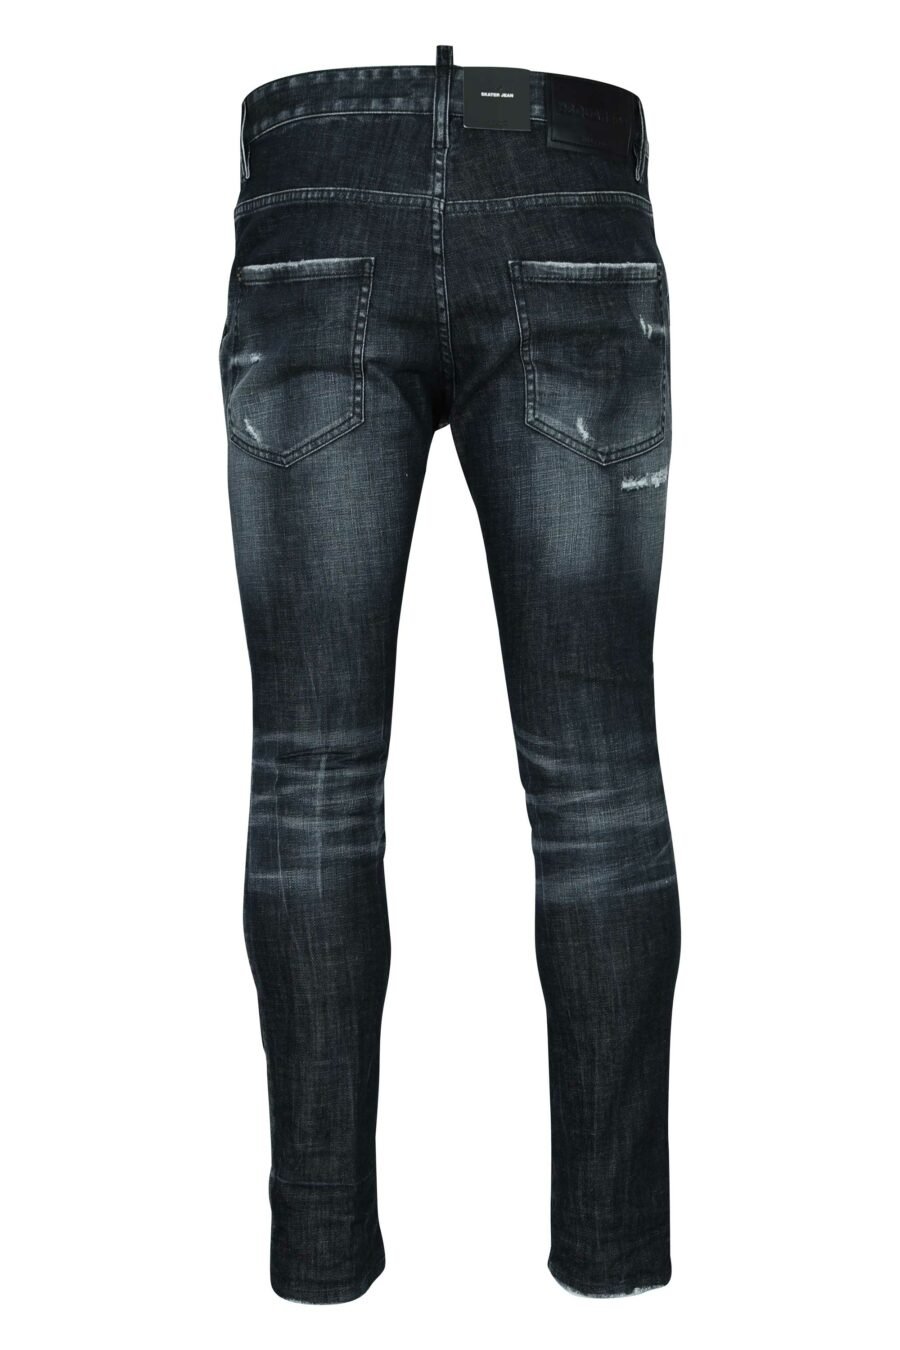 Jean noir "skater jean" avec patch et semi-usure - 8054148522018 1